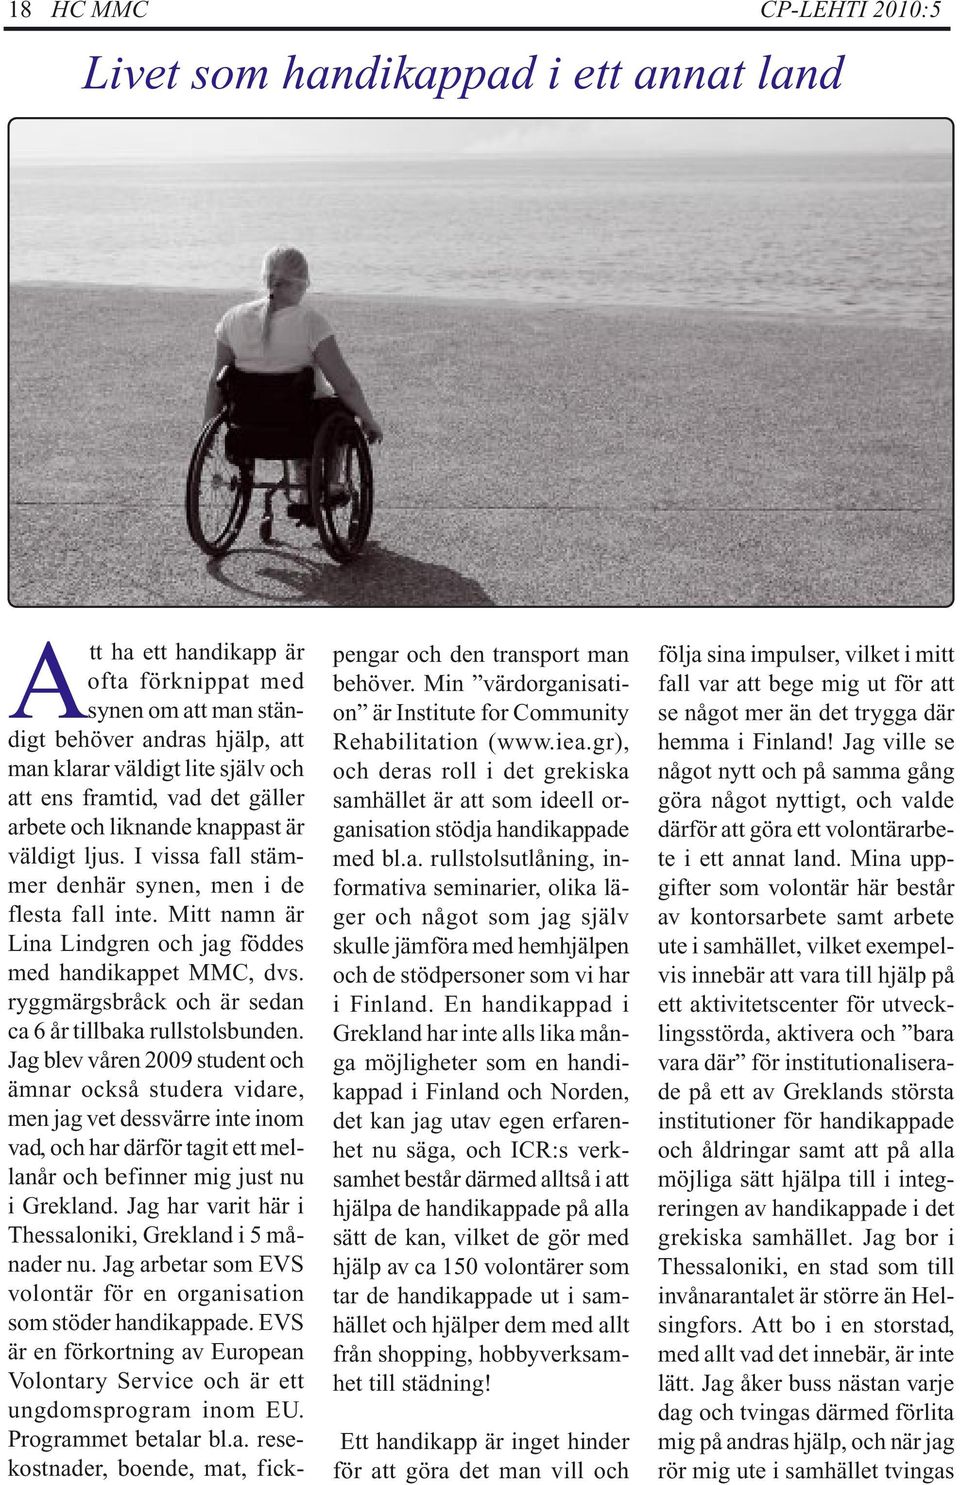 Mitt namn är Lina Lindgren och jag föddes med handikappet MMC, dvs. ryggmärgsbråck och är sedan ca 6 år tillbaka rullstolsbunden.